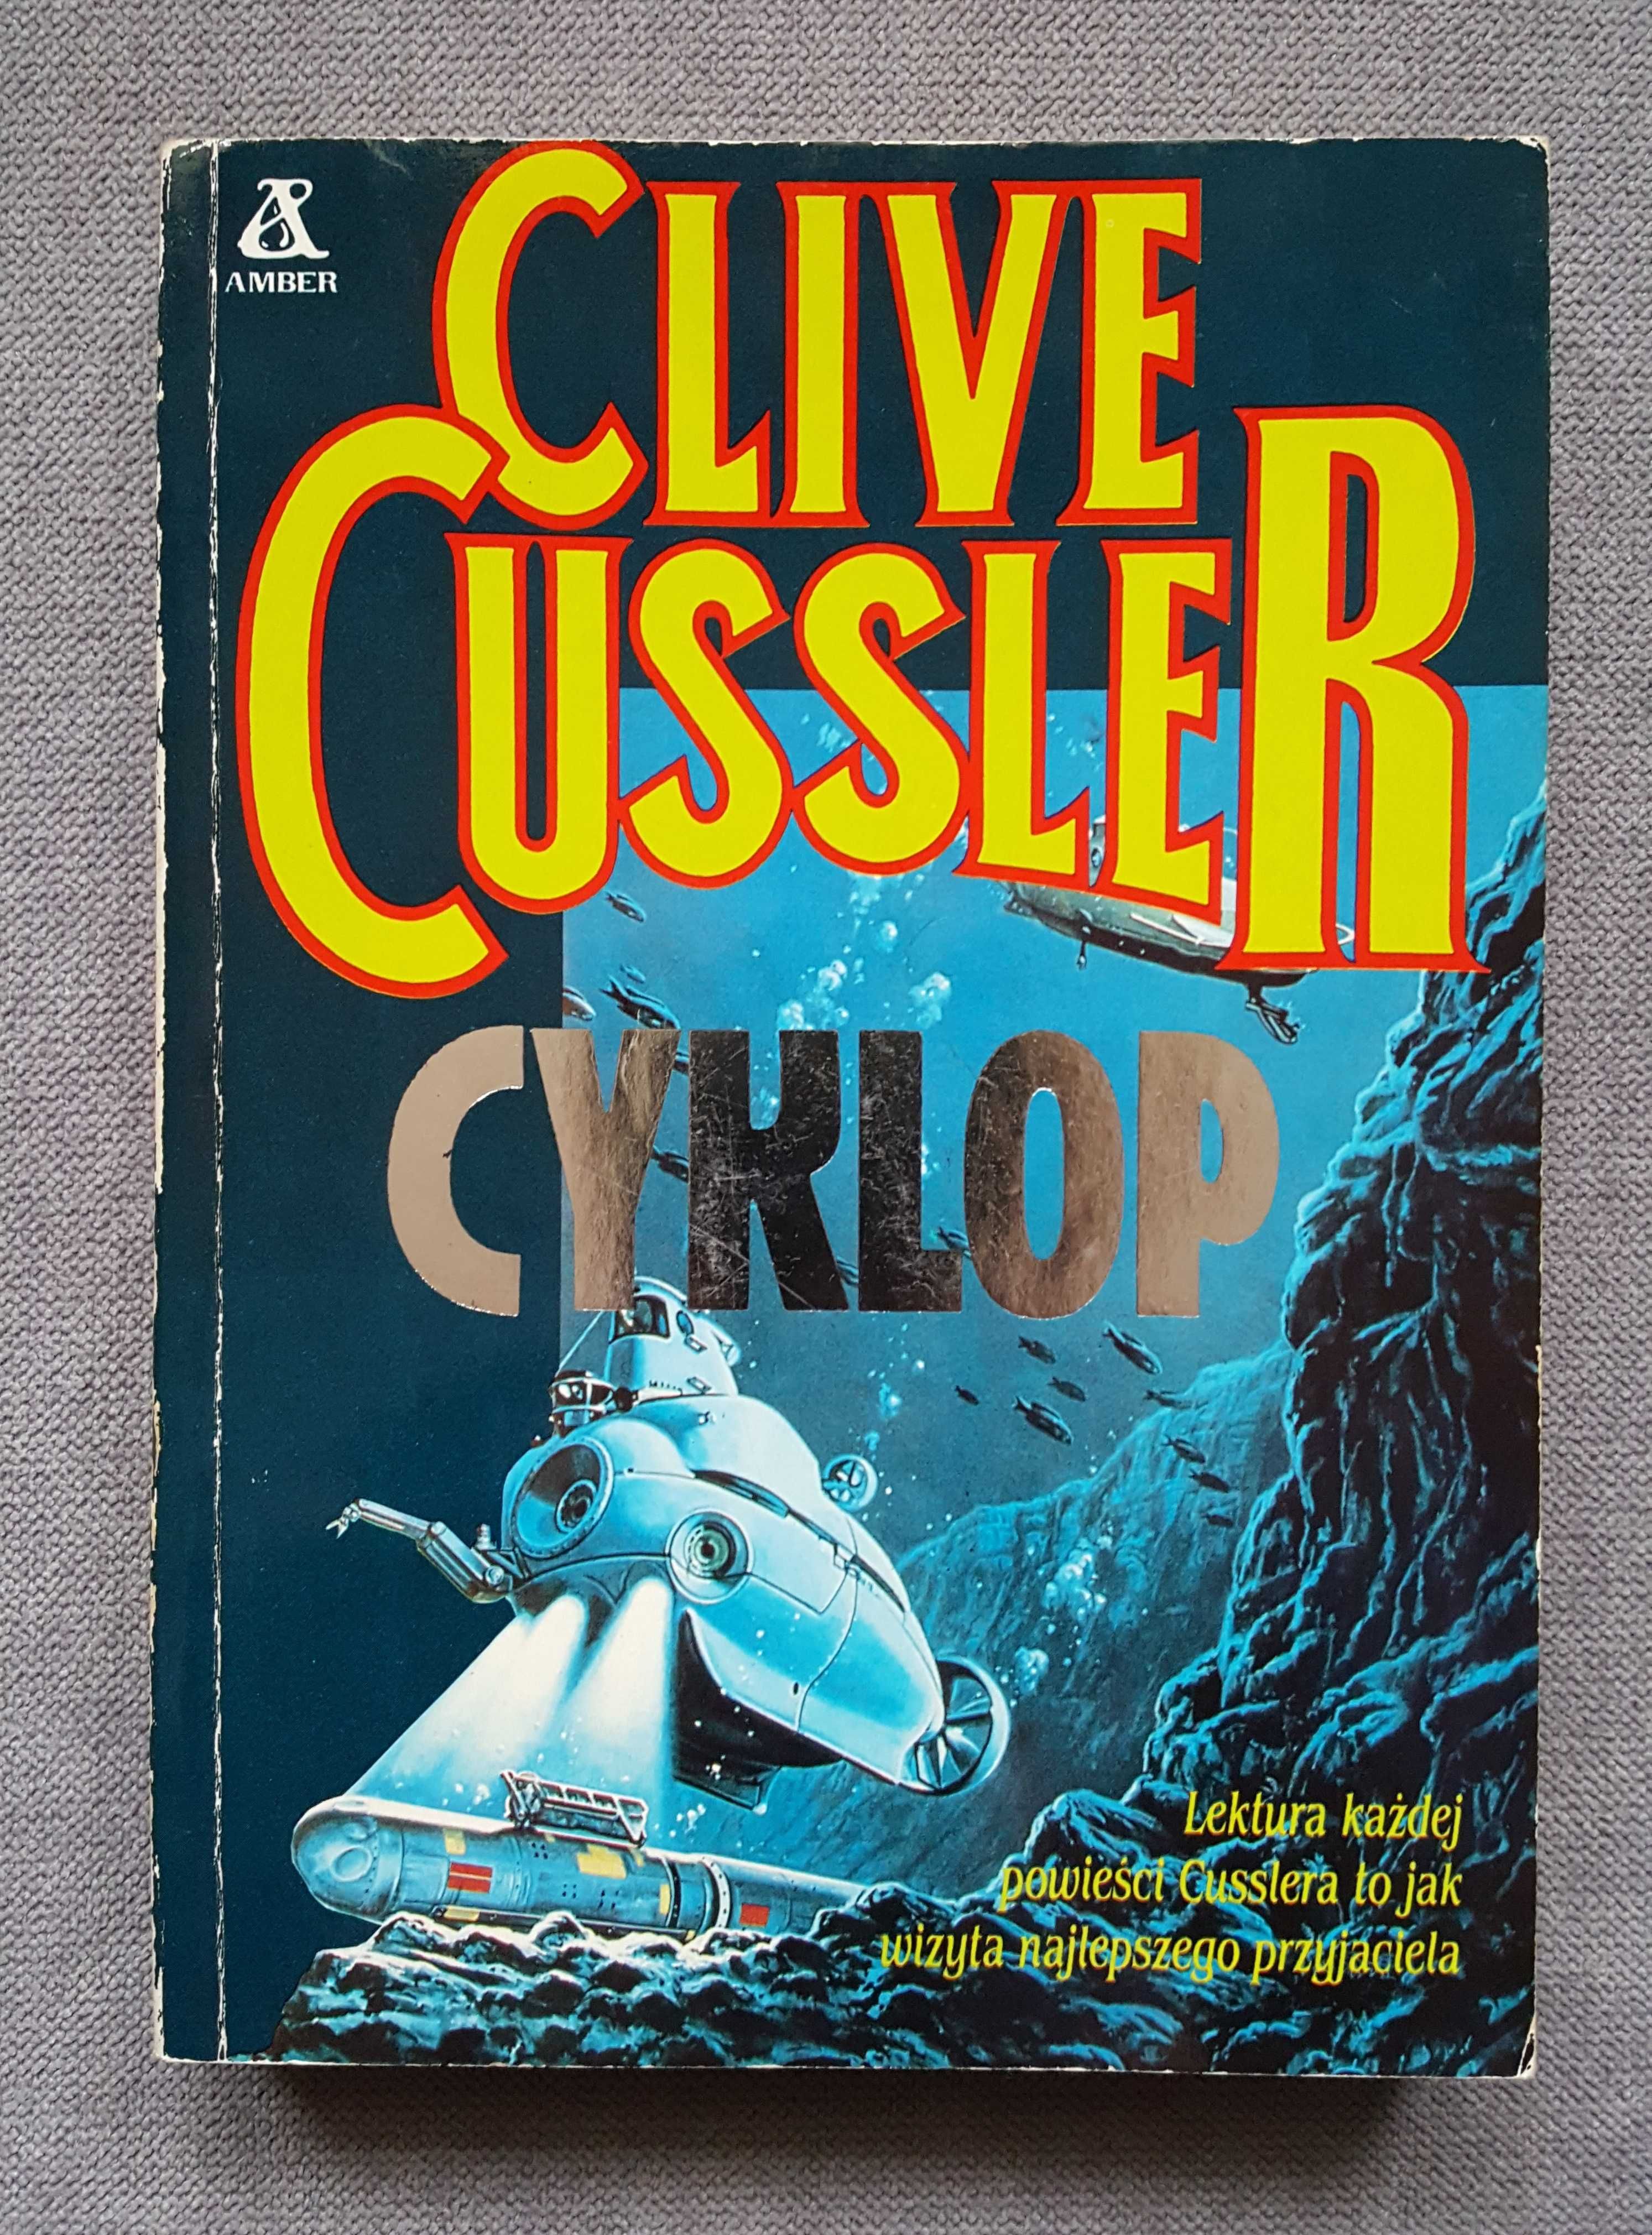 Cyklop - Clive Cussler